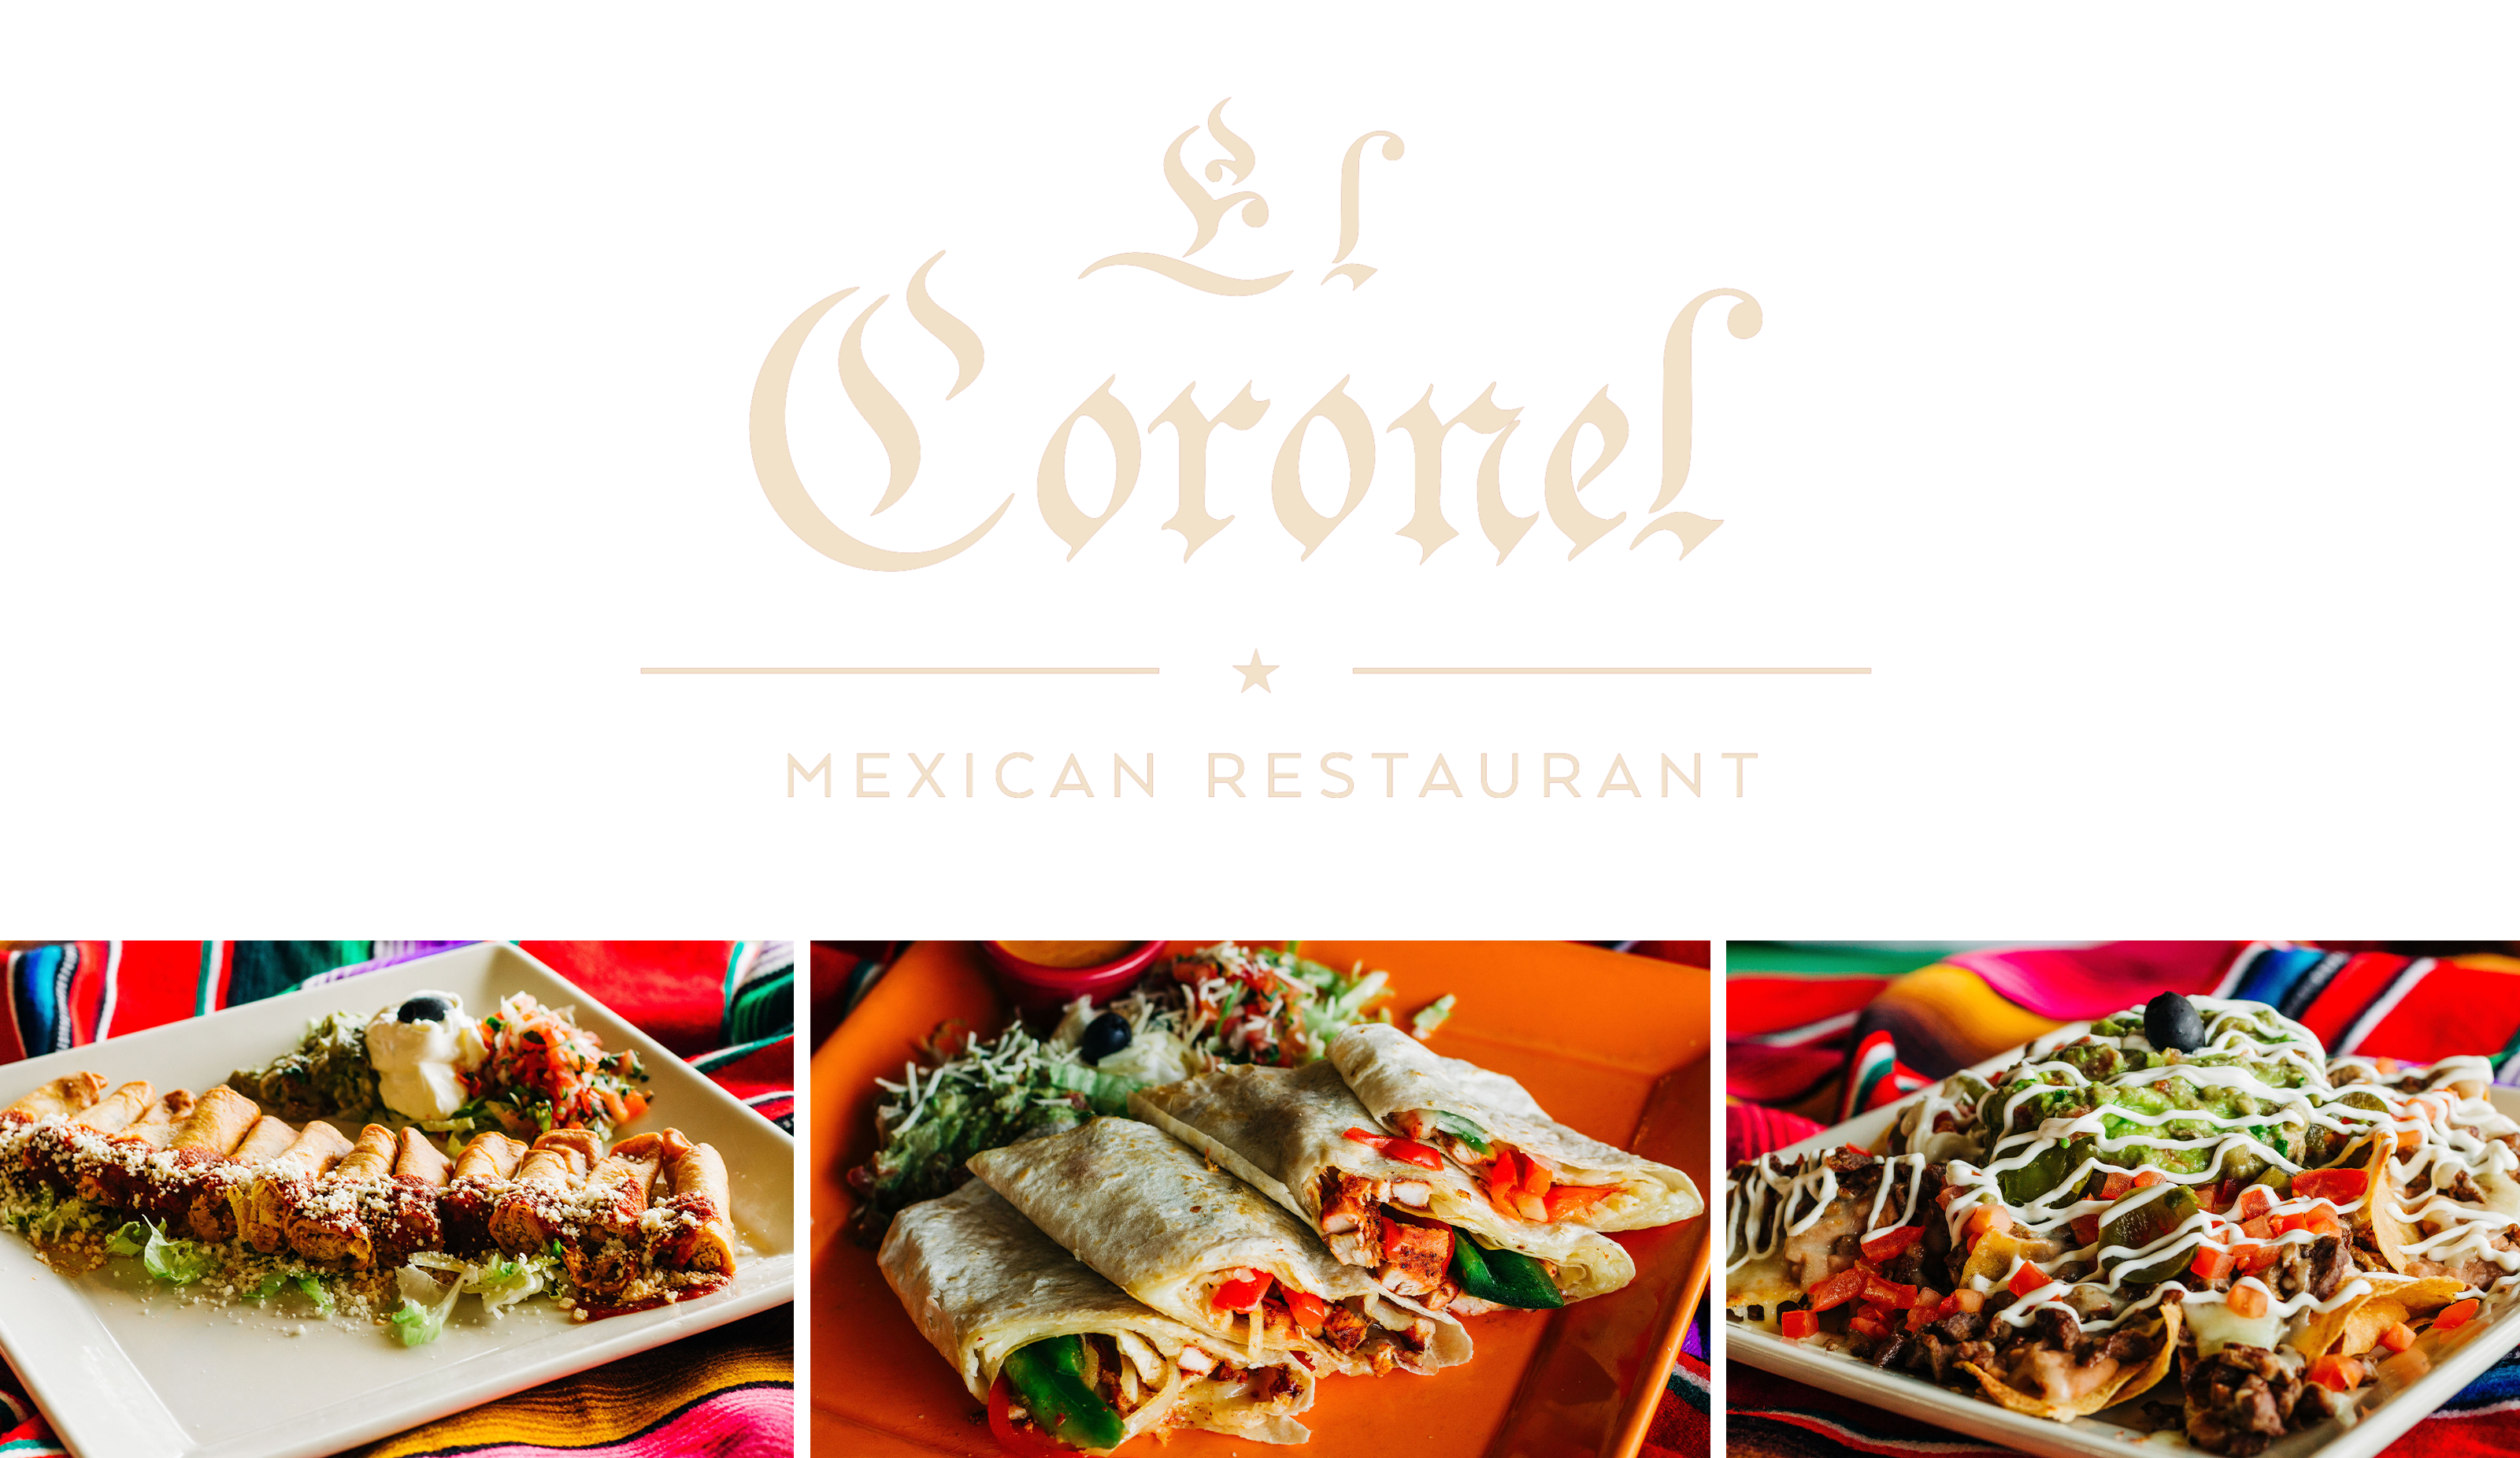 El Coronel Mexican Restaurant 